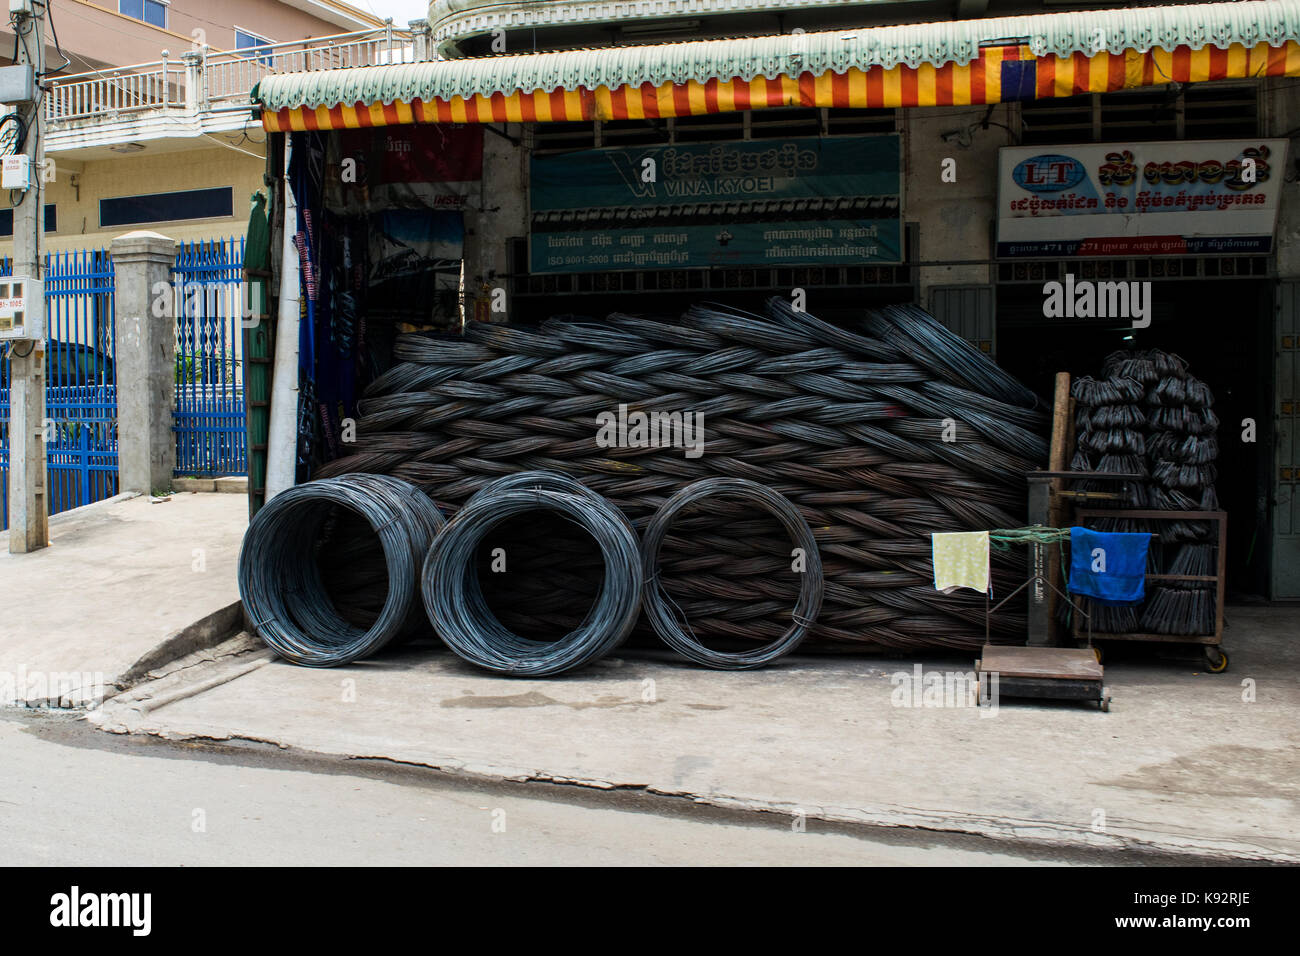 Ein hardware Shop Verkauf von Metall und Kabel spulen. Drahtrollen werden übereinander gestapelt und angezeigt außerhalb der Shop in Phnom Penh, Kambodscha Stockfoto